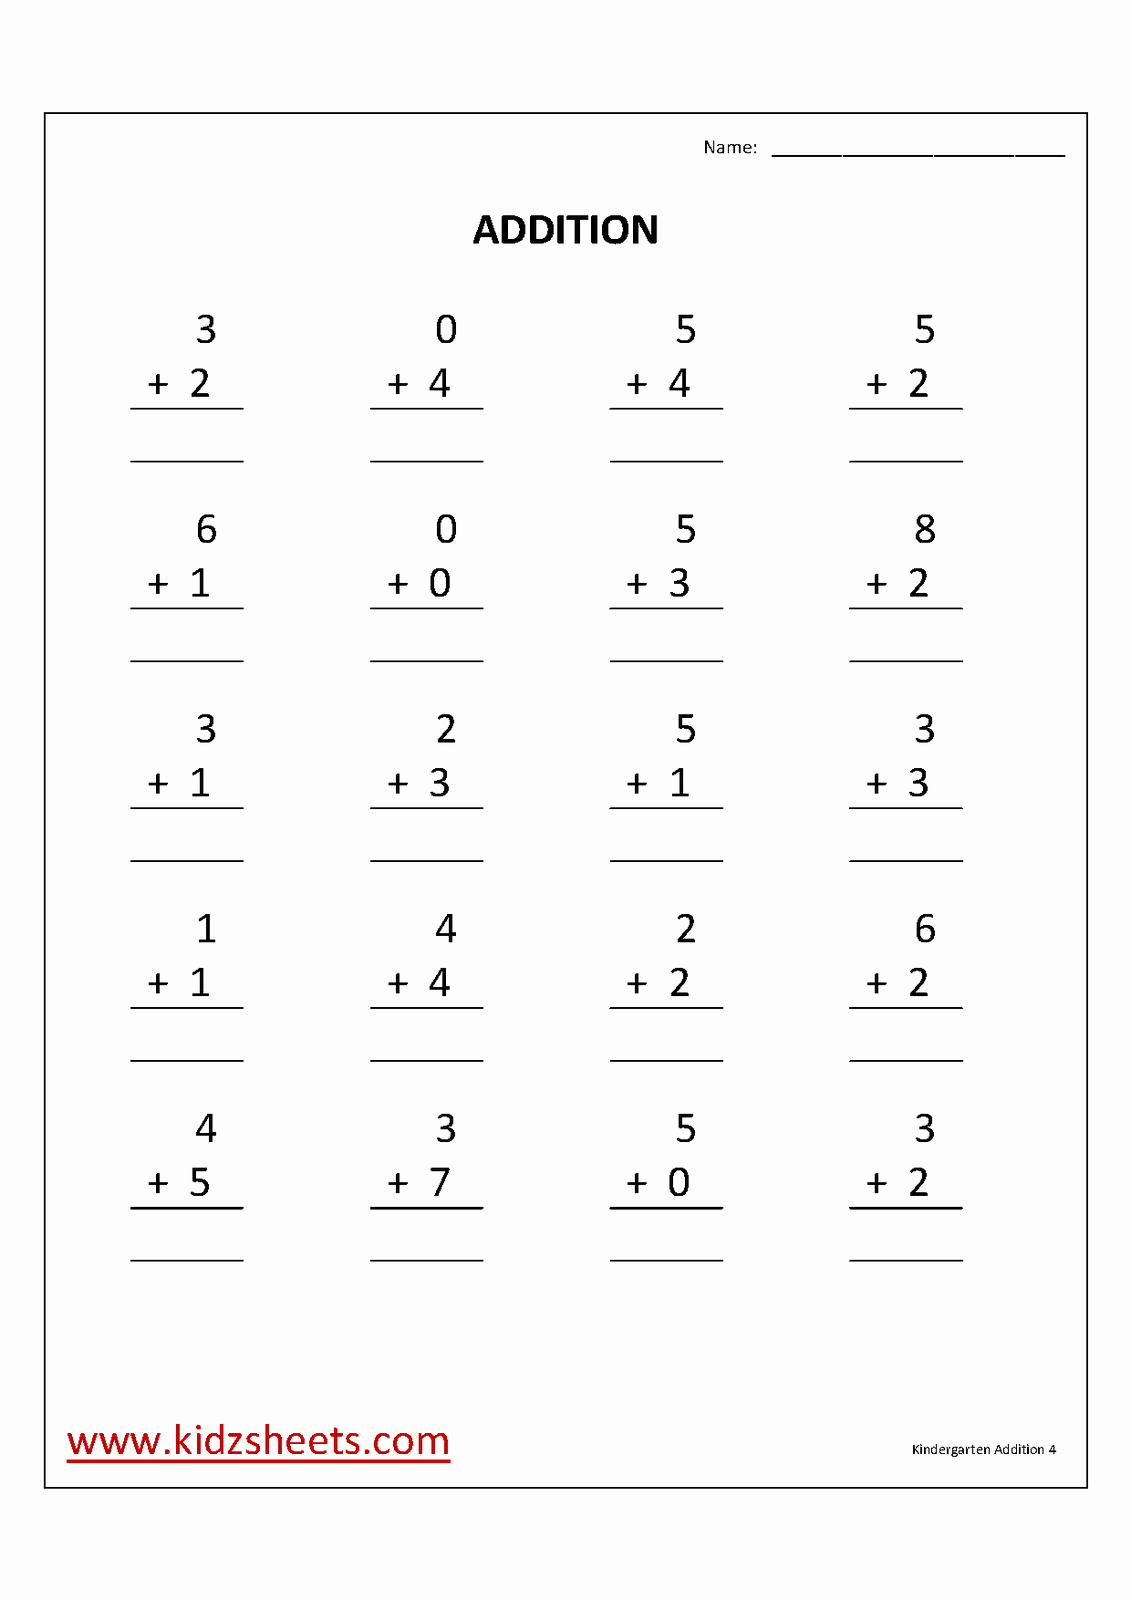 Simple Addition Worksheets for Kindergarten Inspirational Kidz Worksheets Kindergarten Addition Worksheet4